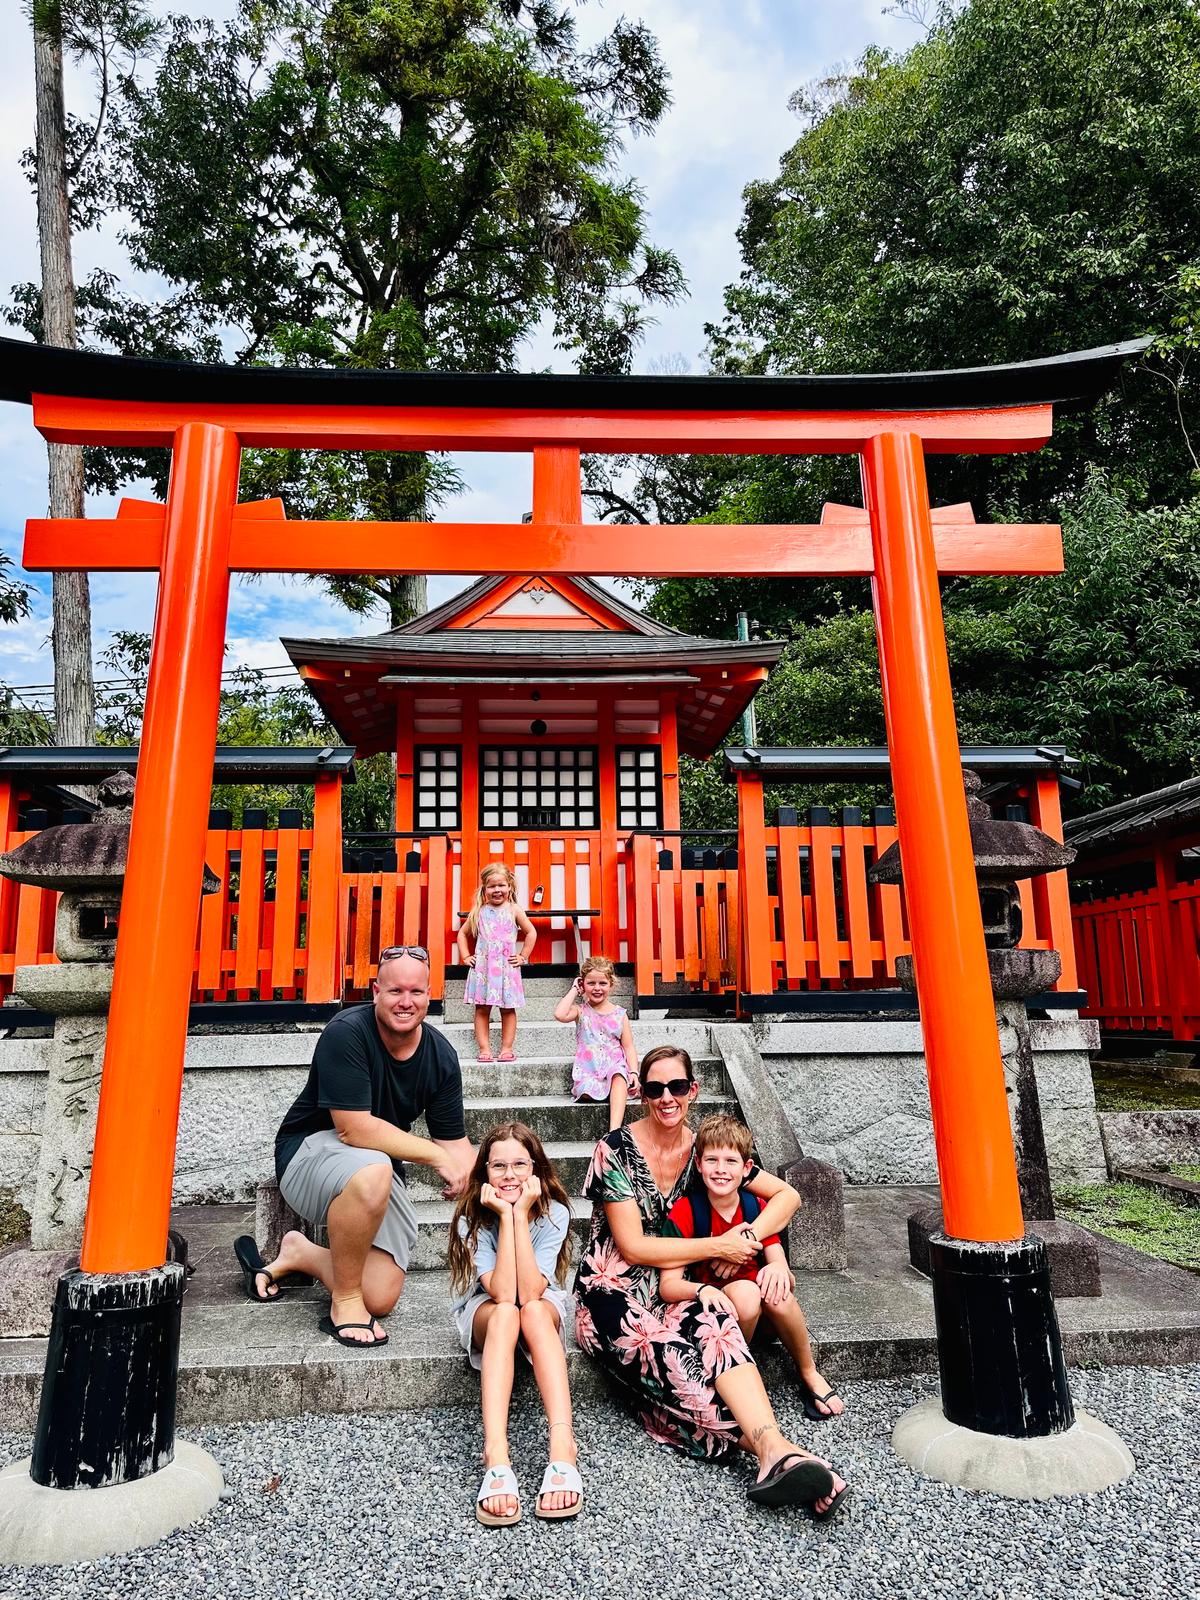 The Fushimi Inari Taisha shrine, Japan. (SWNS)